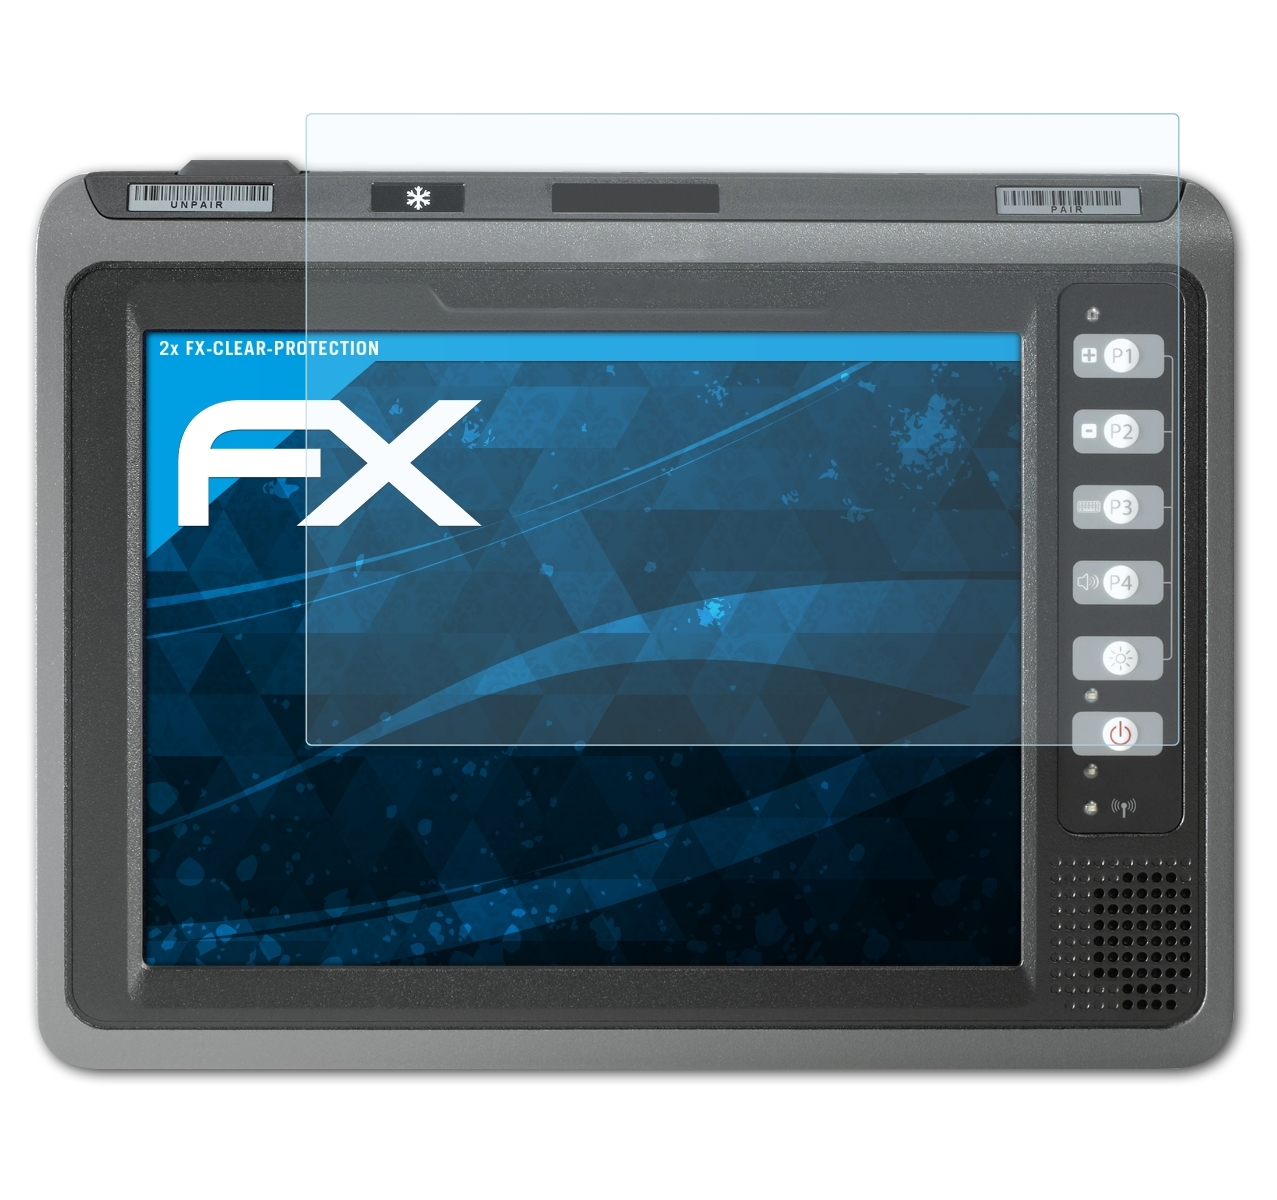 ATFOLIX 2x FX-Clear Displayschutz(für Zebra VC70N0)